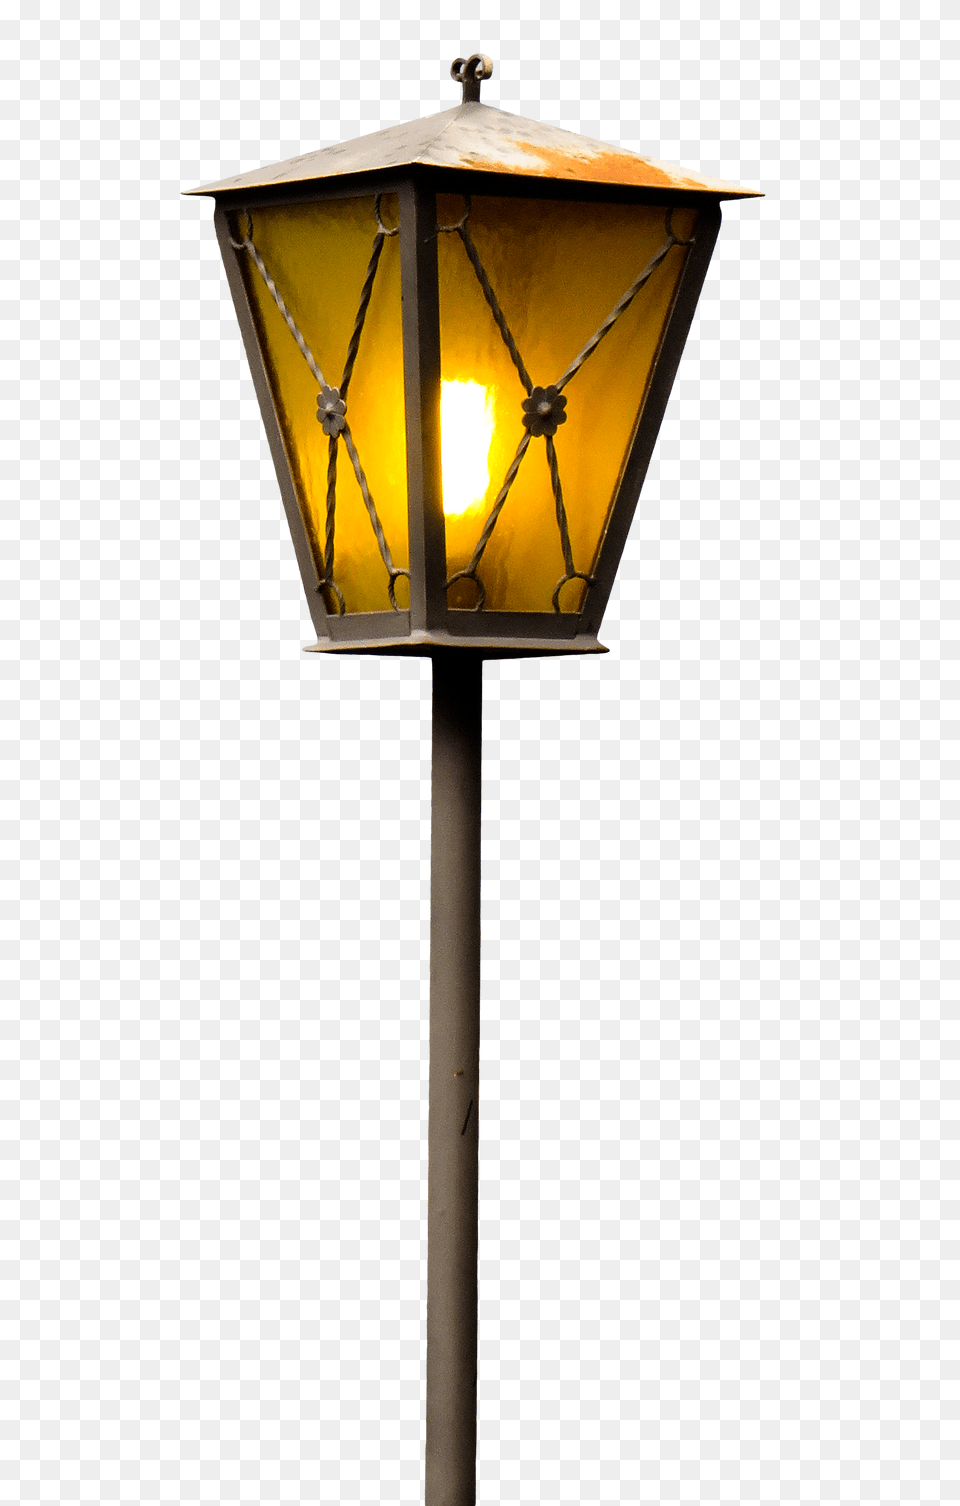 Pngpix Com Street Lamp Transparent Image, Lampshade, Mailbox, Lamp Post Free Png Download